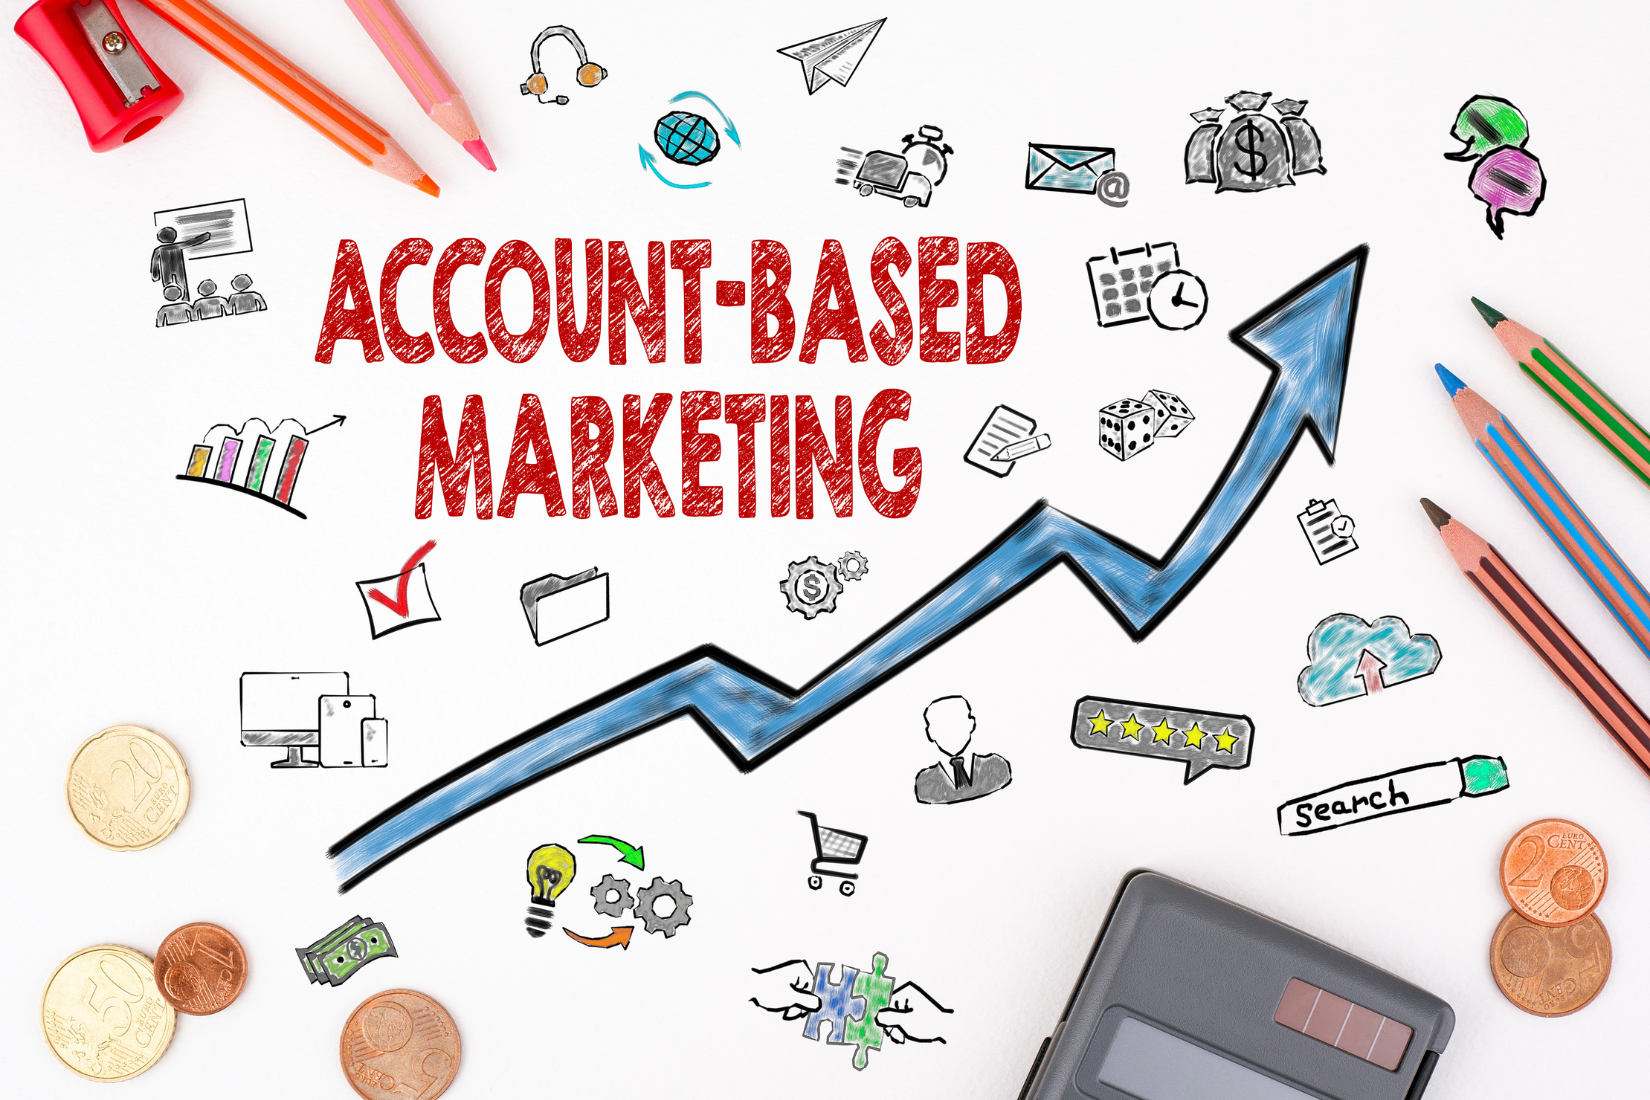 Account Based Marketing Image